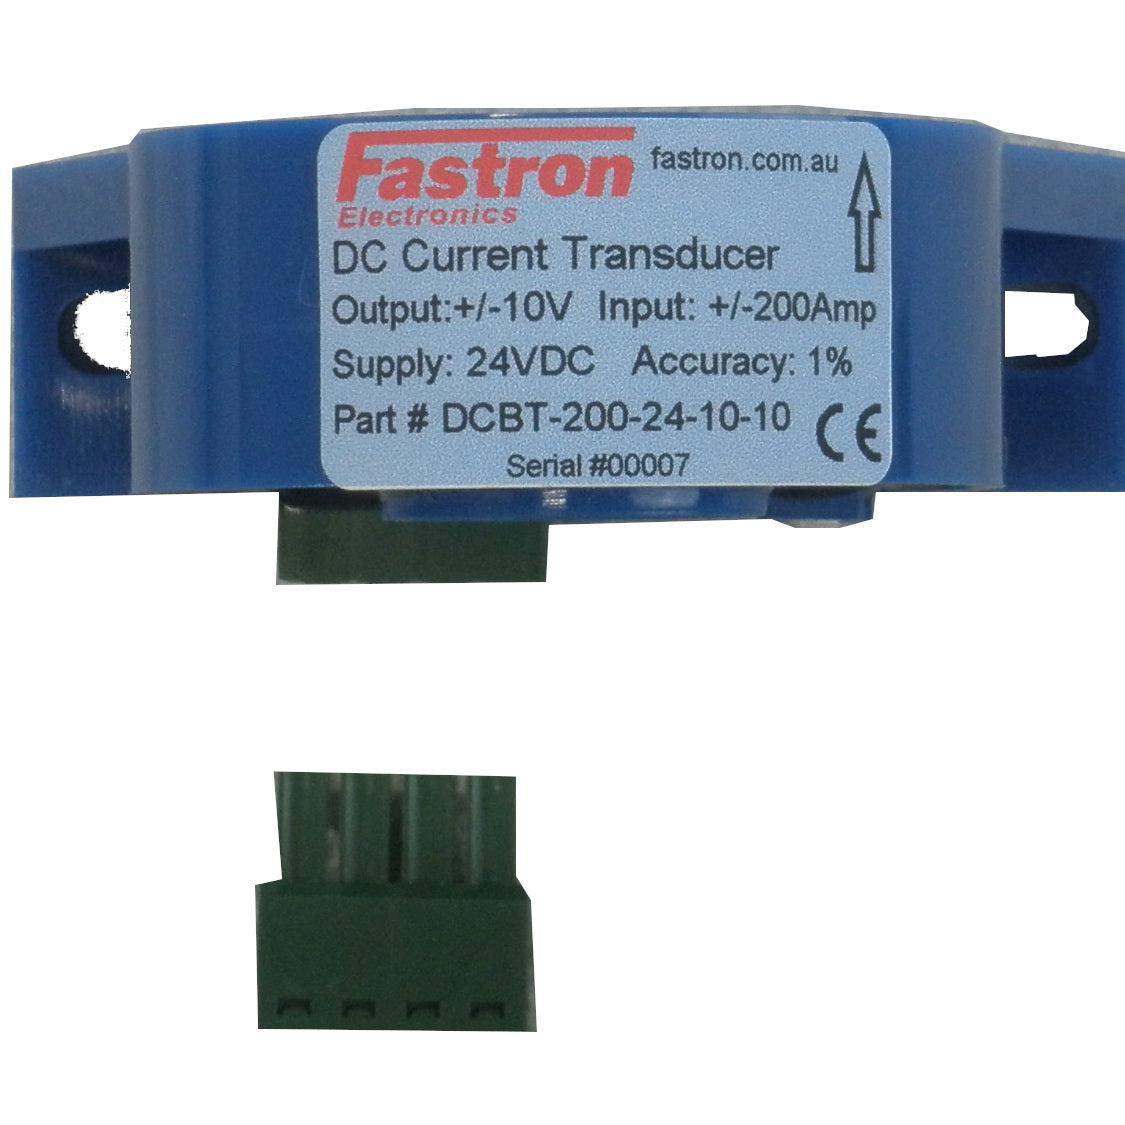 DCBT-300-24-10-10, Hall Effect DC Current Transducer, +/-300 Amp DC, +/-10VDC bipolar output, 24VDC supply, 20mm Aperture